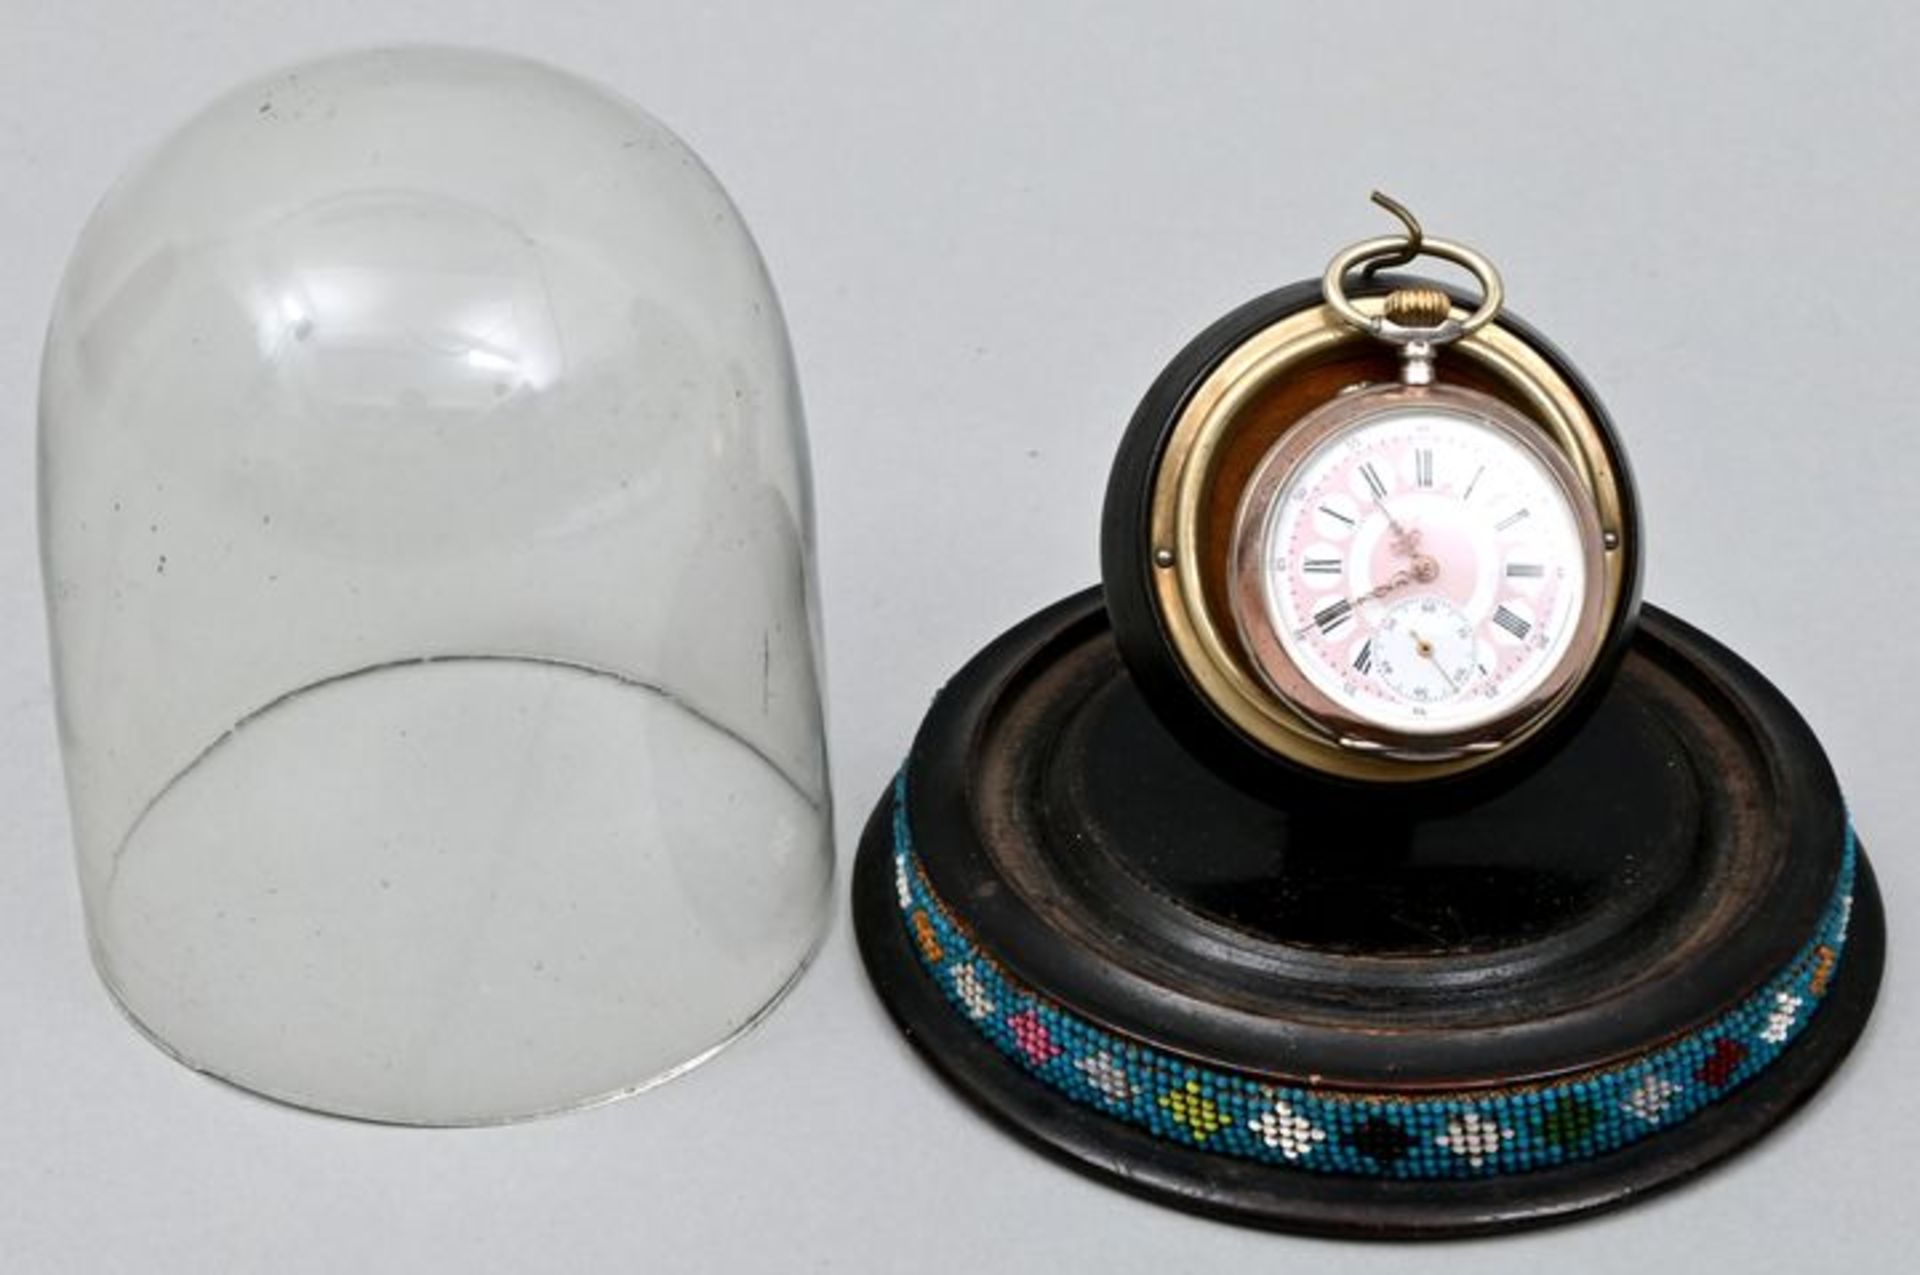 Taschenuhr mit Ständer und Glasdom / Pocket watch with stand and glass dome - Bild 5 aus 7